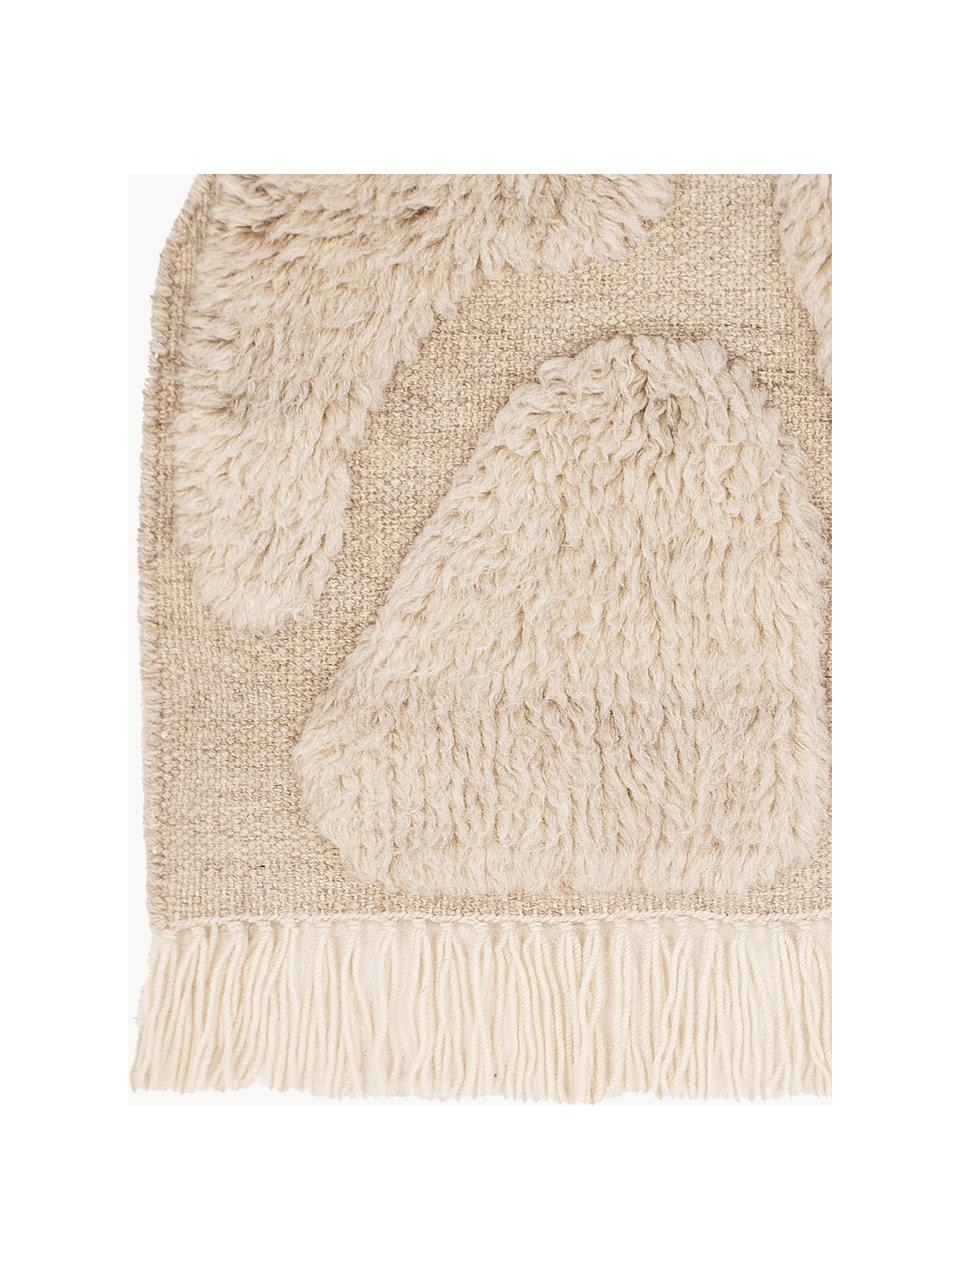 Grosses Wandobjekt Jakobsö aus Wolle mit Fransen, 100 % Wolle, Cremeweiss, B 62 x H 50 cm